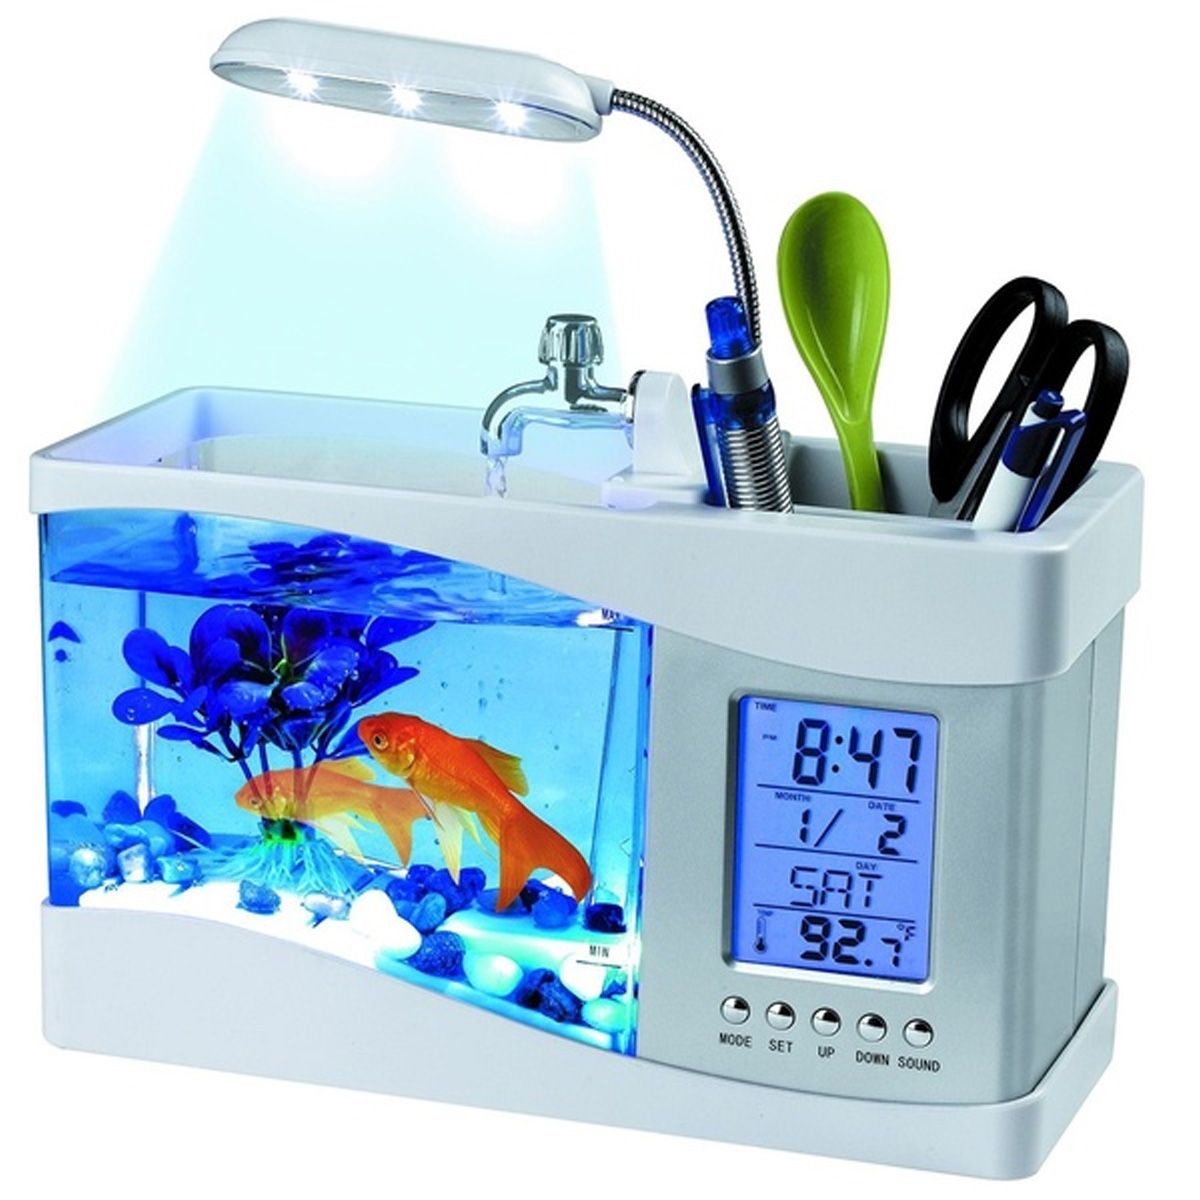 Small-Aquarium-Mini-Fish-Tank-Goldfish-Bowl-Lamp-Thermometer-Alarm-Clock-LED-Light-1608046